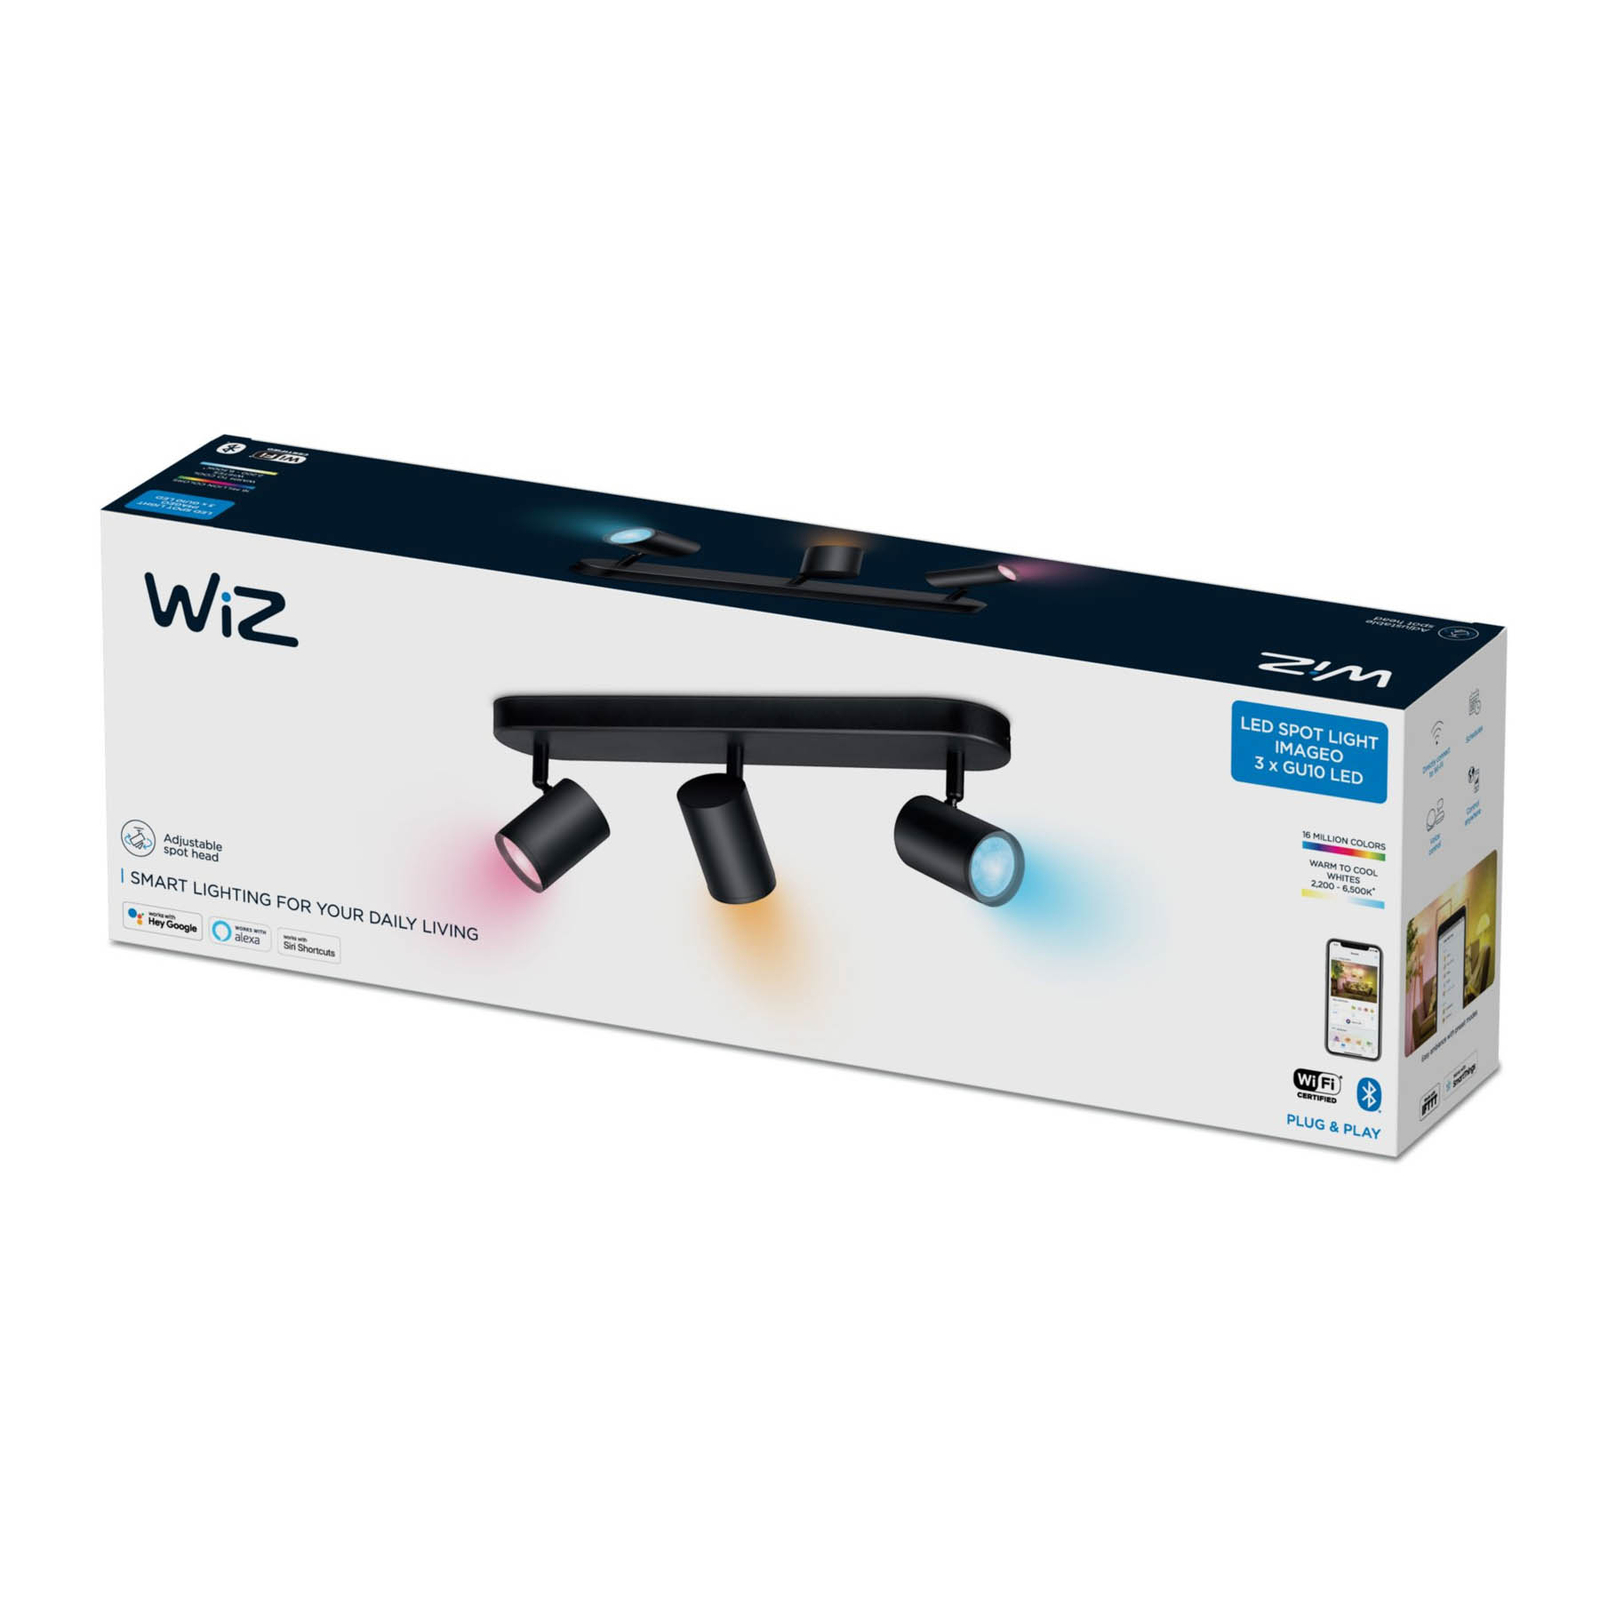 WiZ Imageo LED reflektor 3 světla RGB, černý